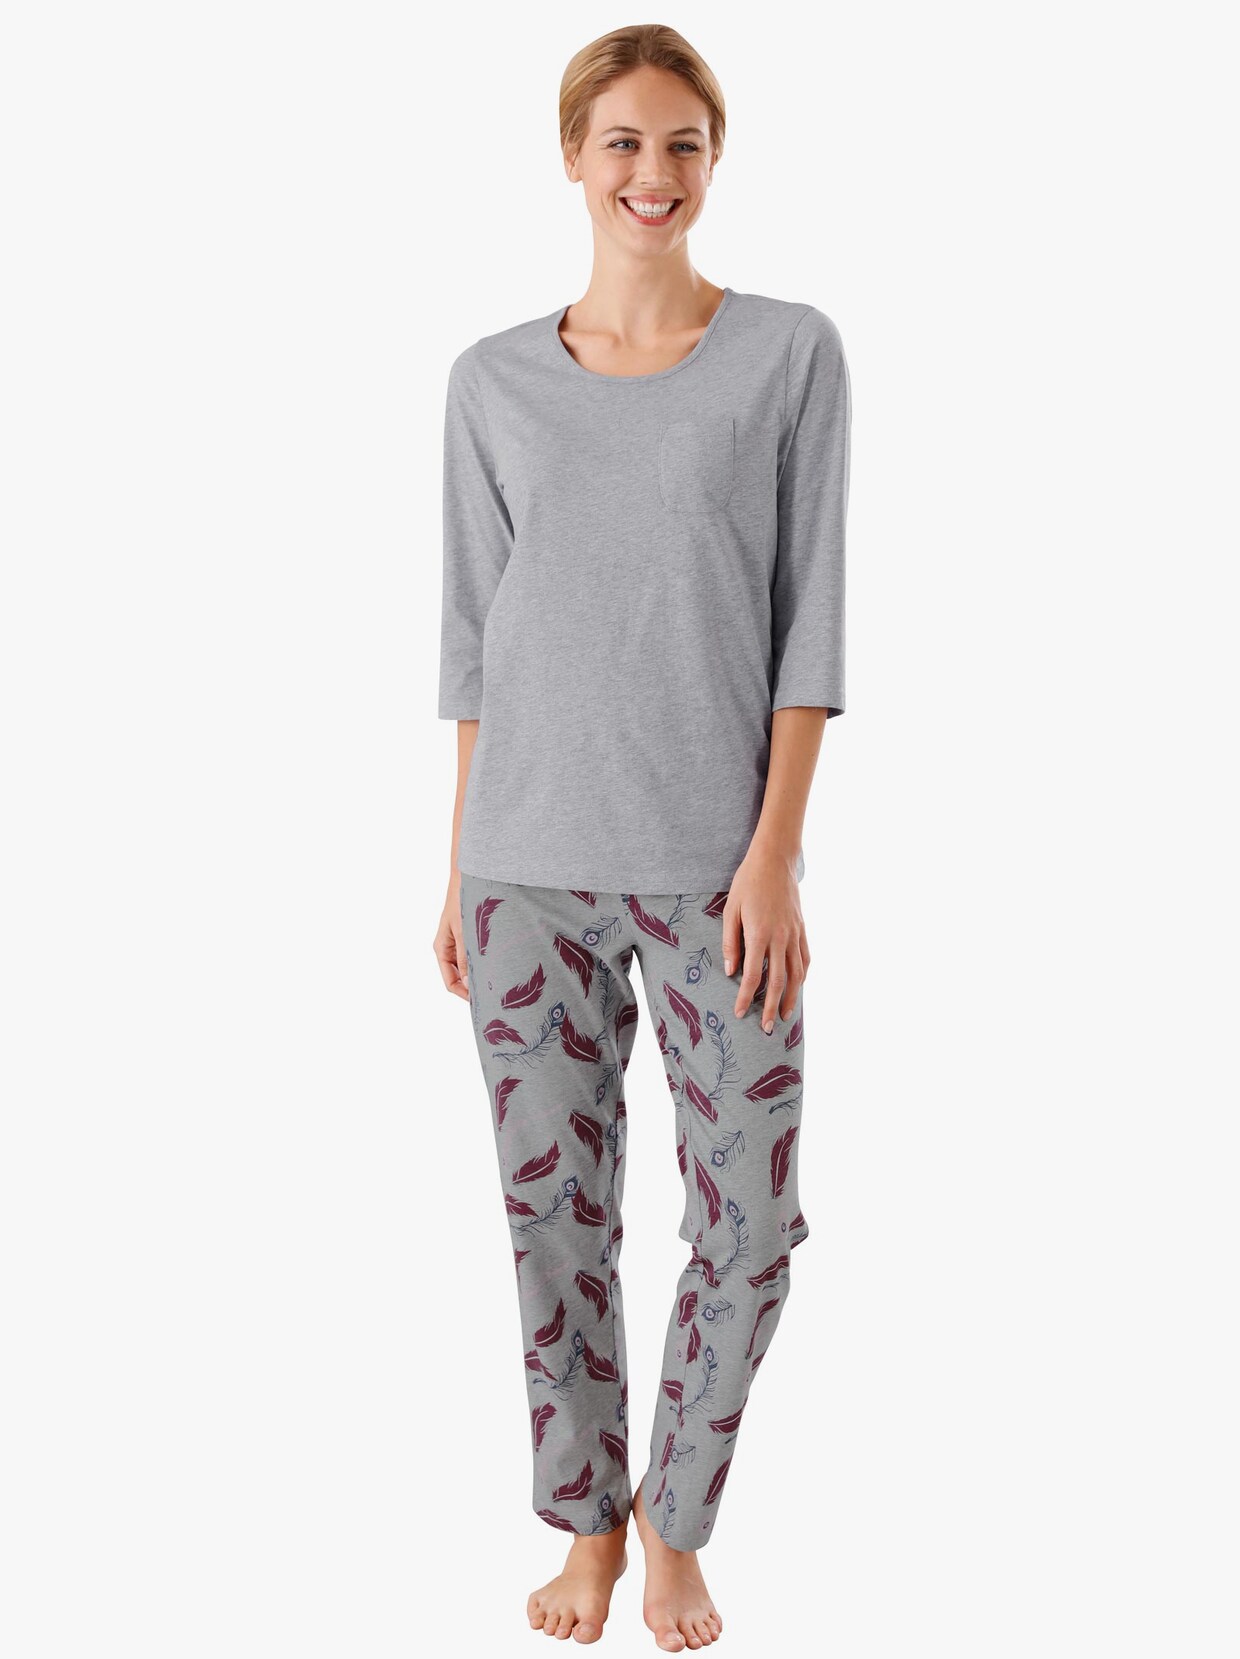 Pyjamas-Byxor - ljusgrå, melerad